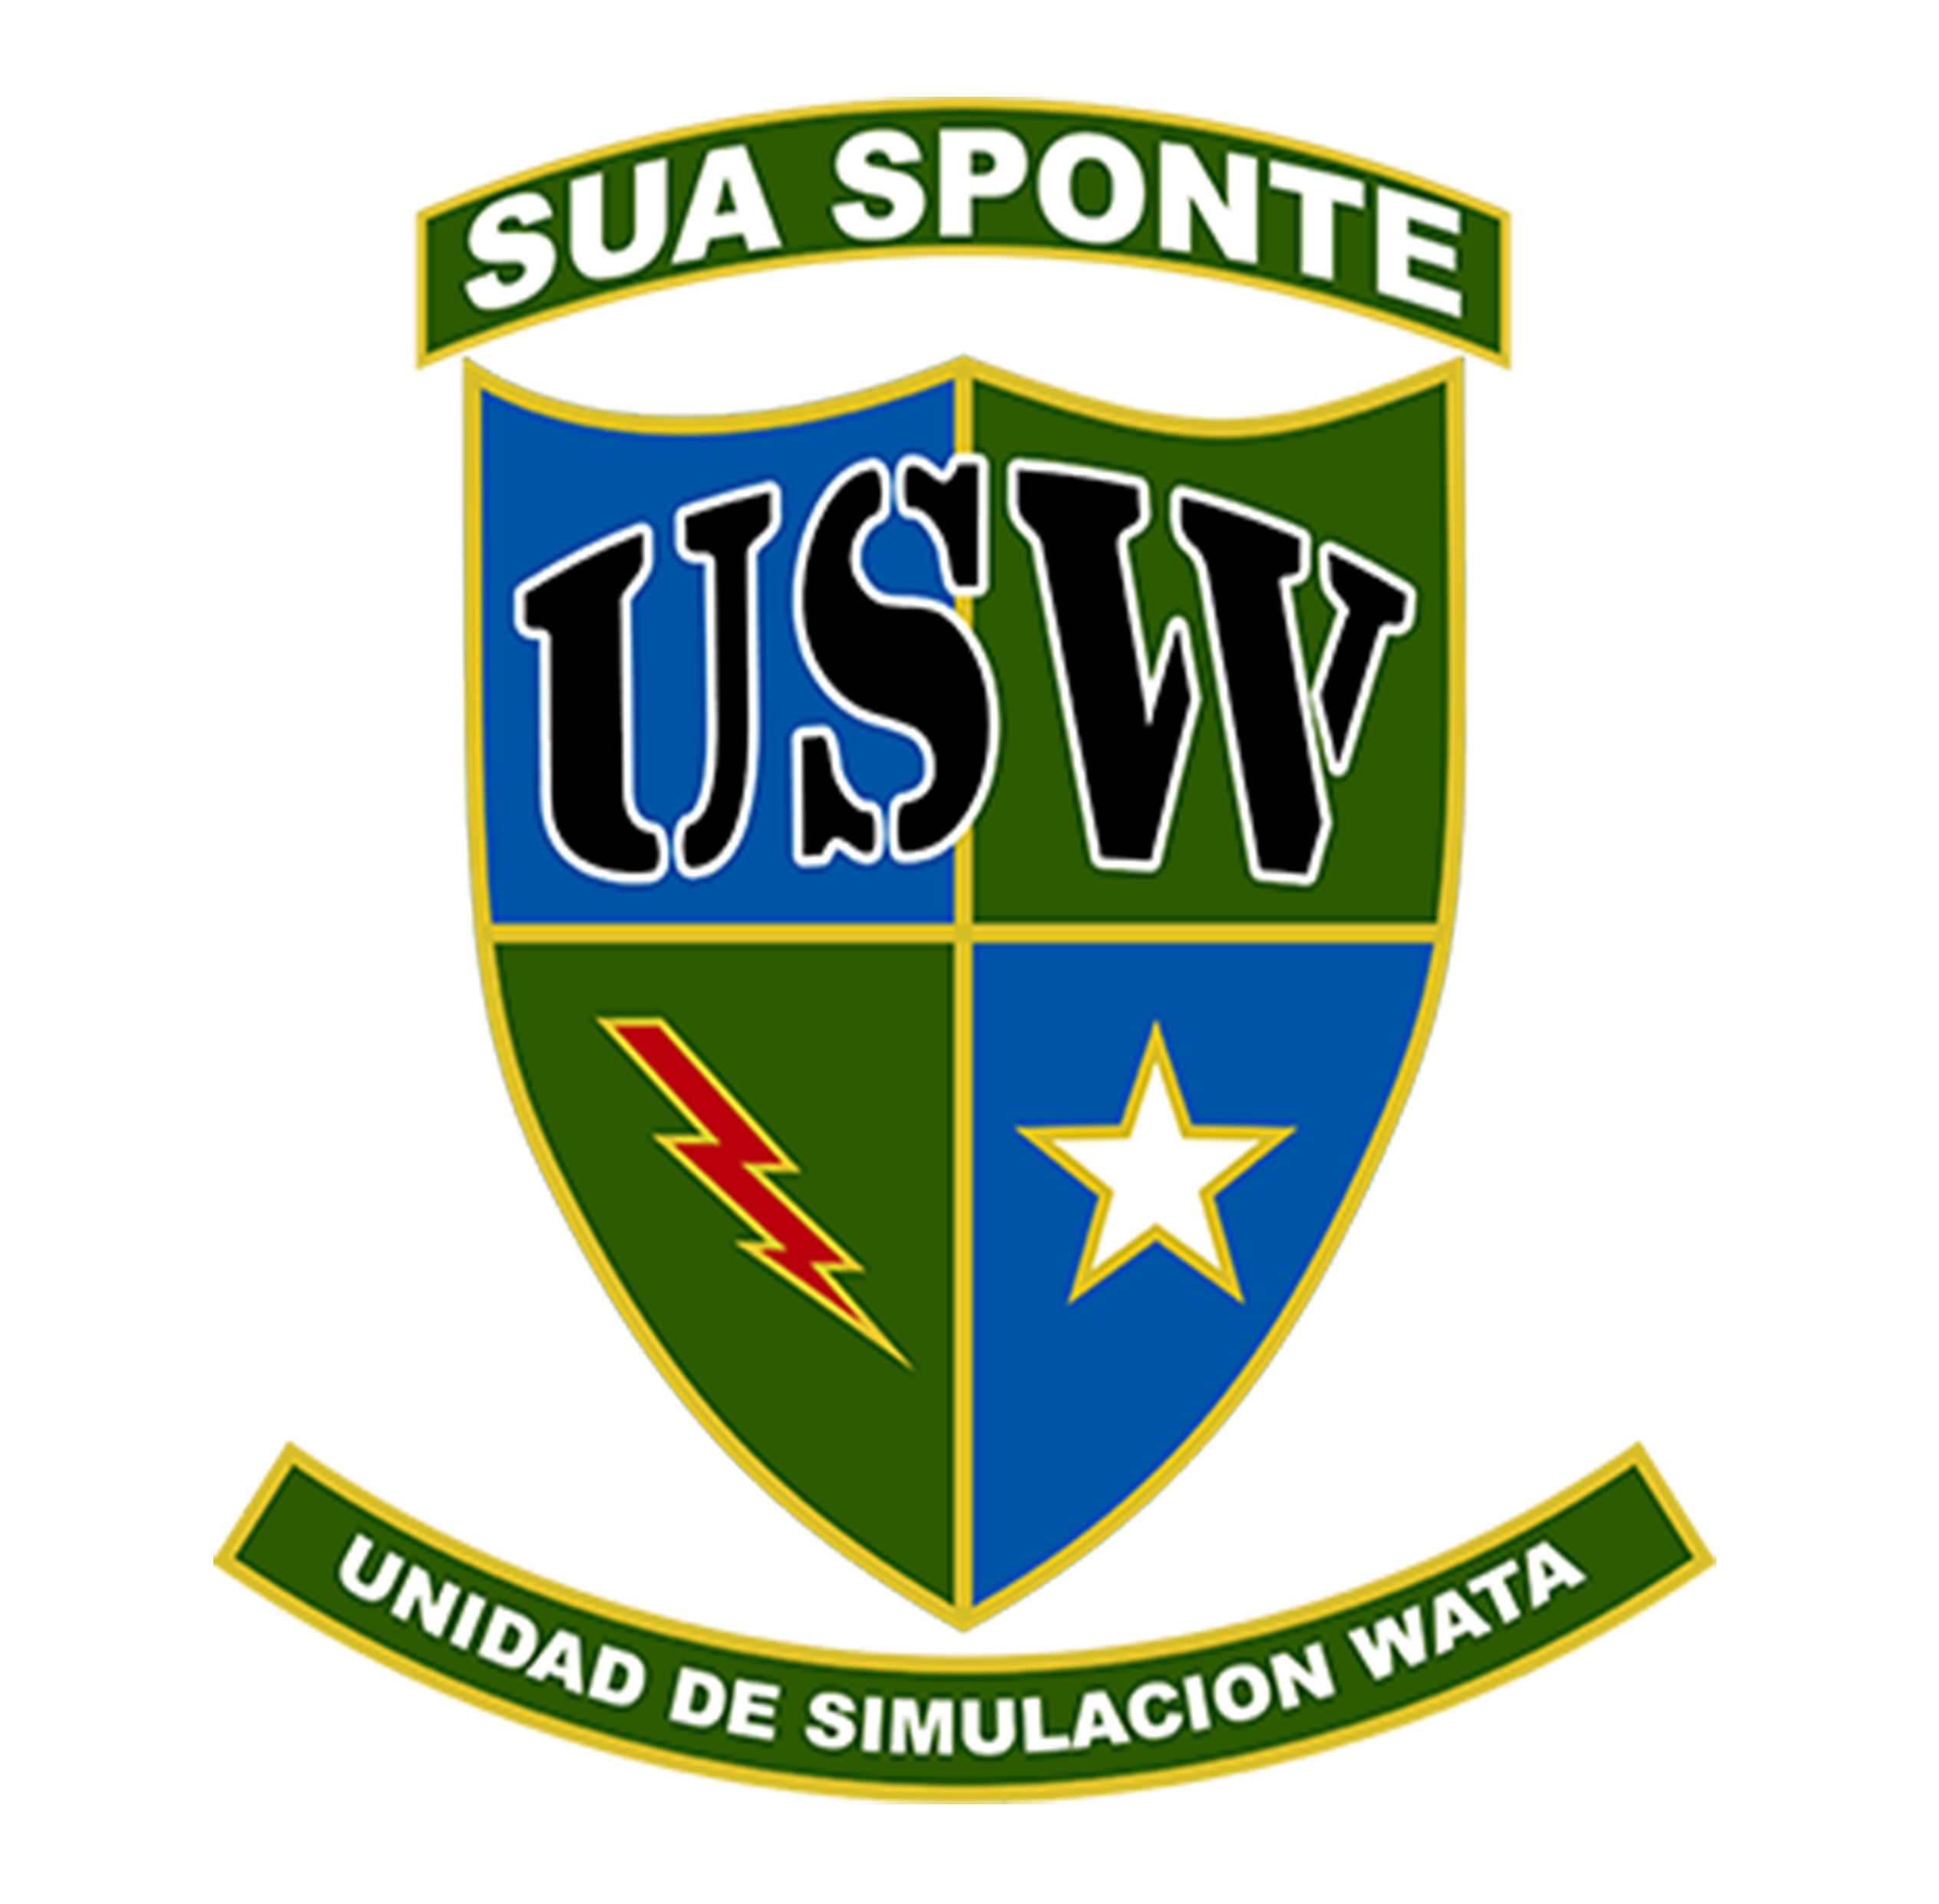 Unidad de Simulacion Wata (USW)